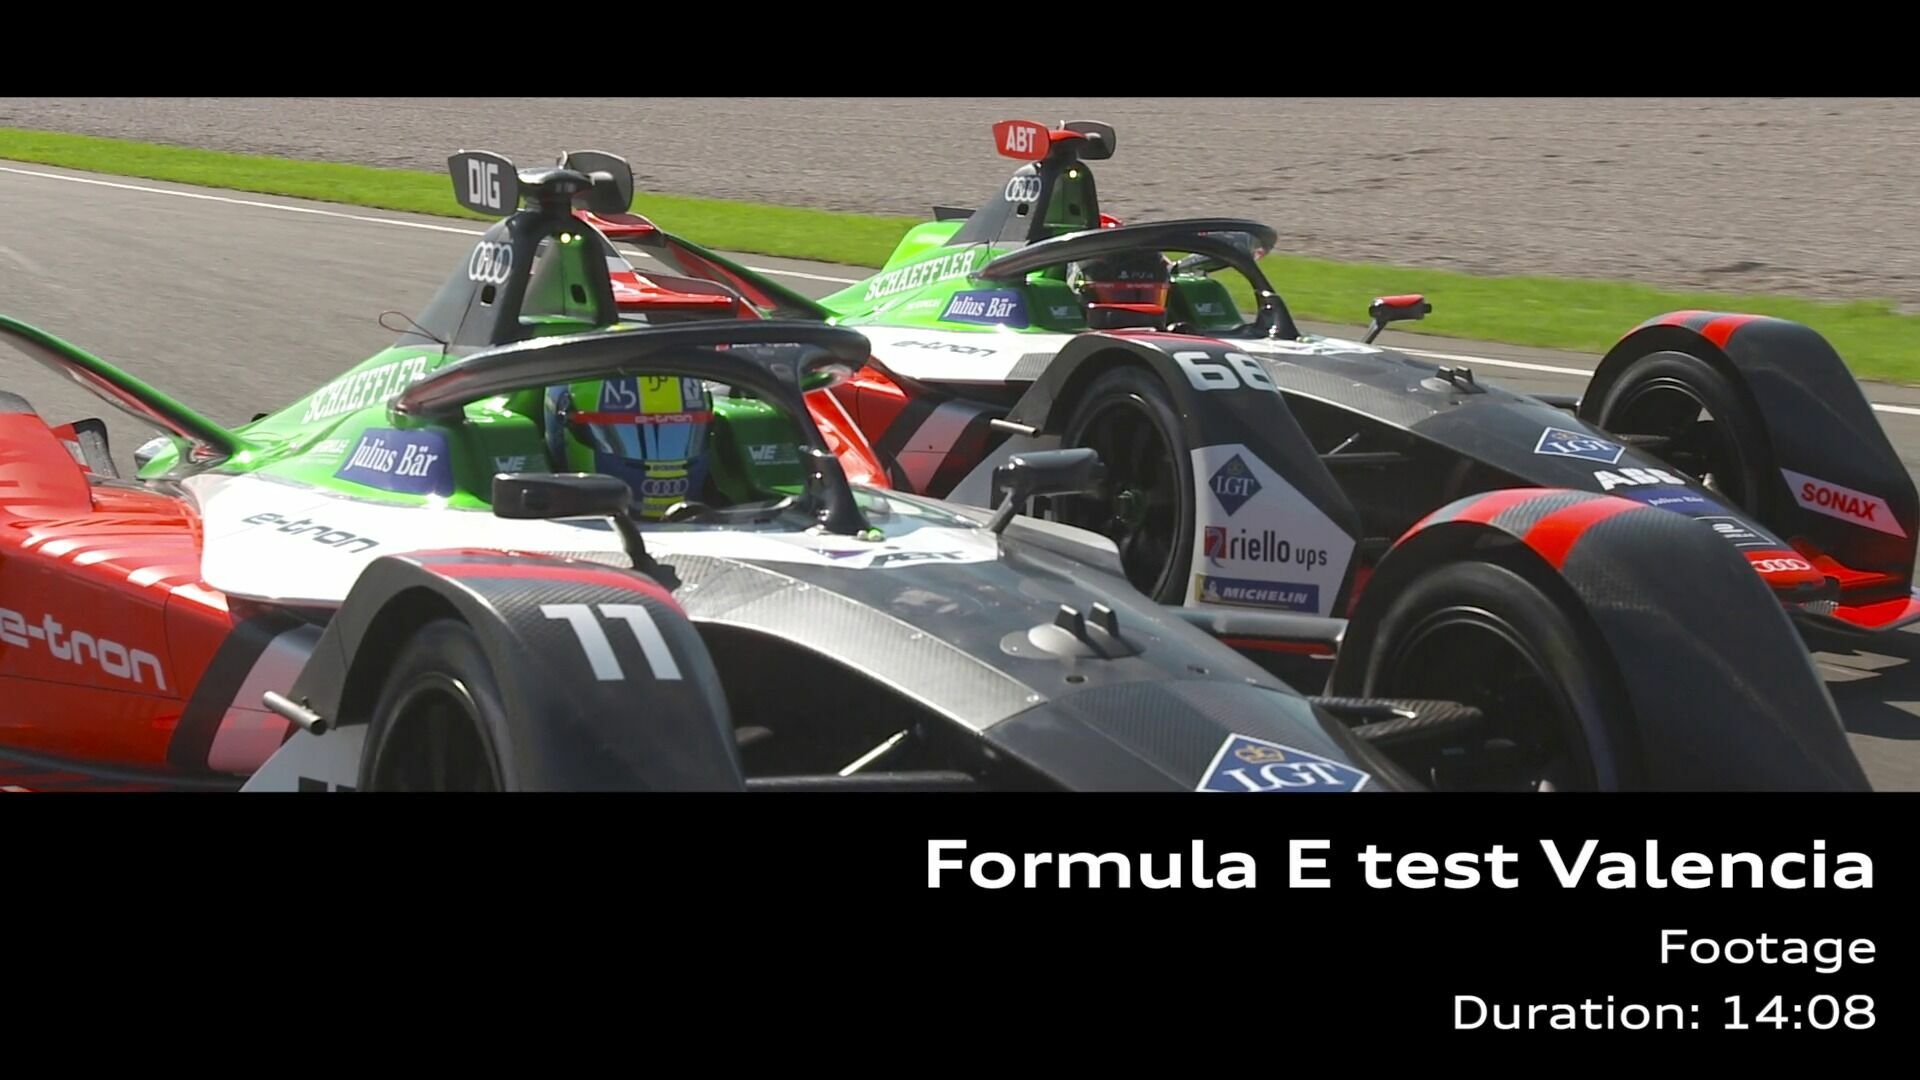 Test für die Formel-E-Saison 6 in Valencia (Footage)